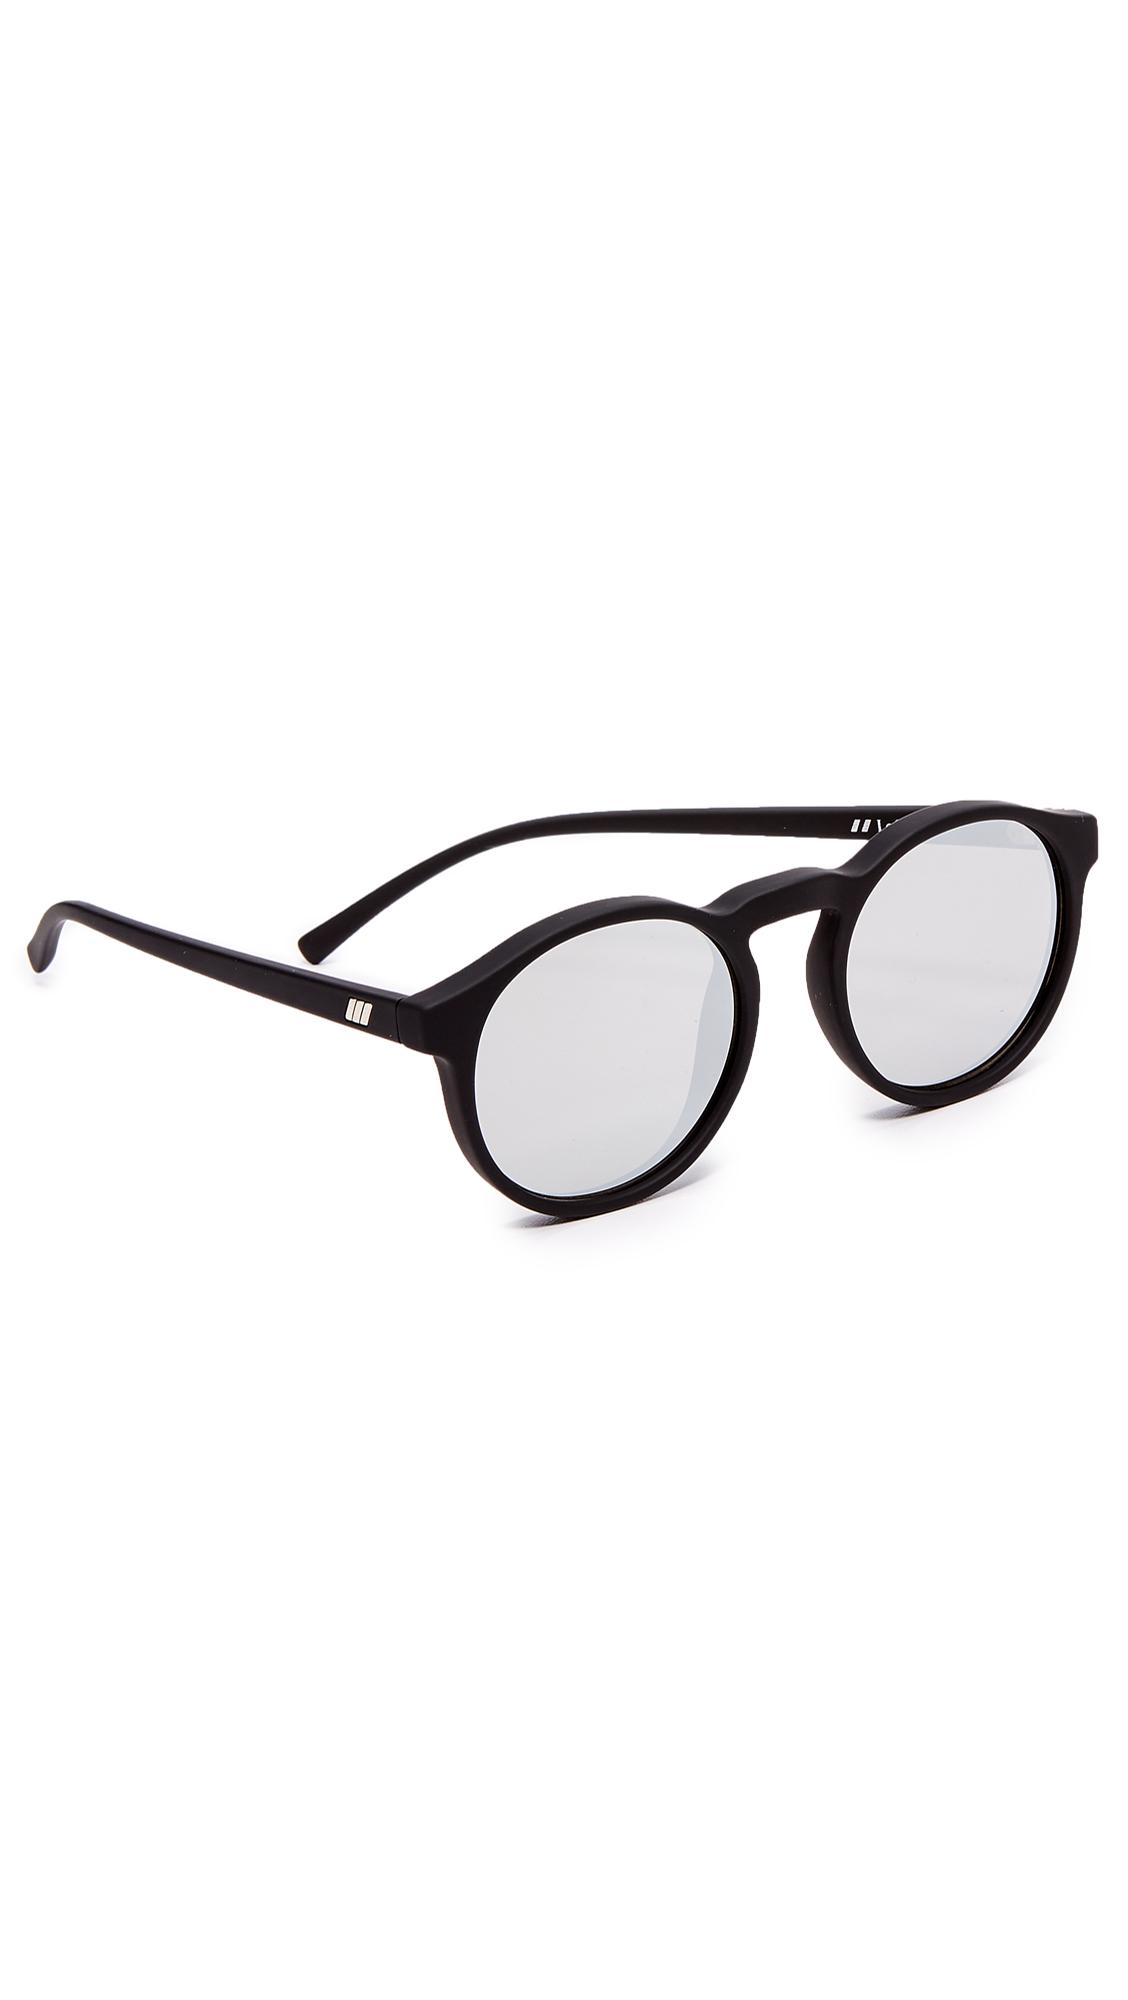 Le Specs Cubanos Sunglasses In Black Rubber/silver Revo | ModeSens